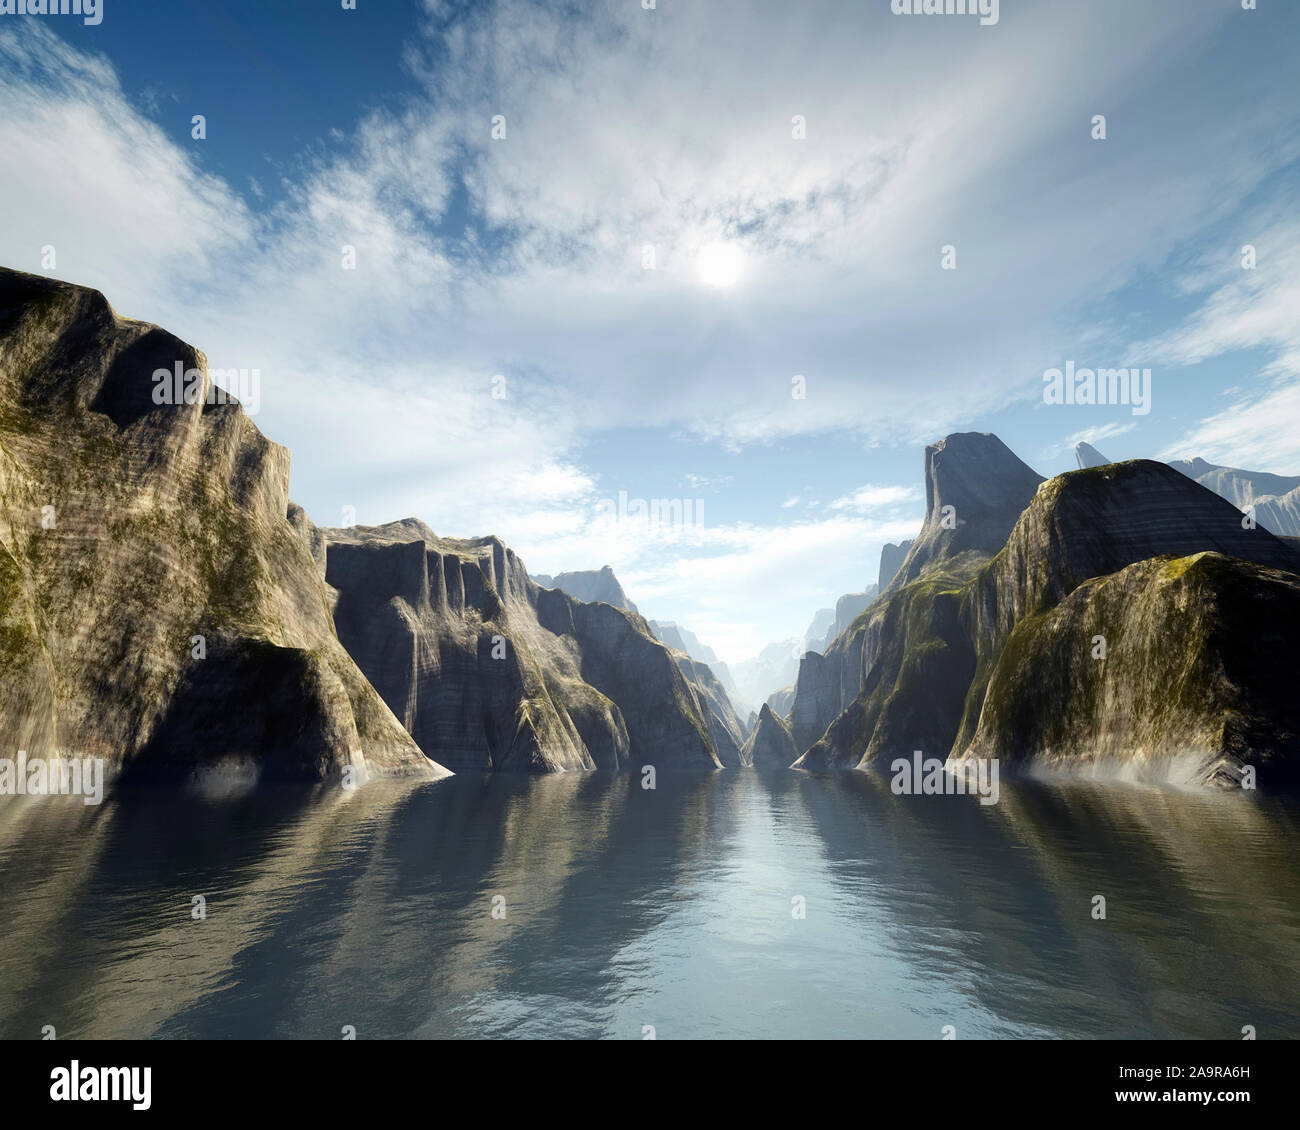 Eine wunderschoene Fantasy-Landschaft, die darstellt, wie der Ozean zwischen zwei Gebirgsketten hindurchfliesst Stock Photo